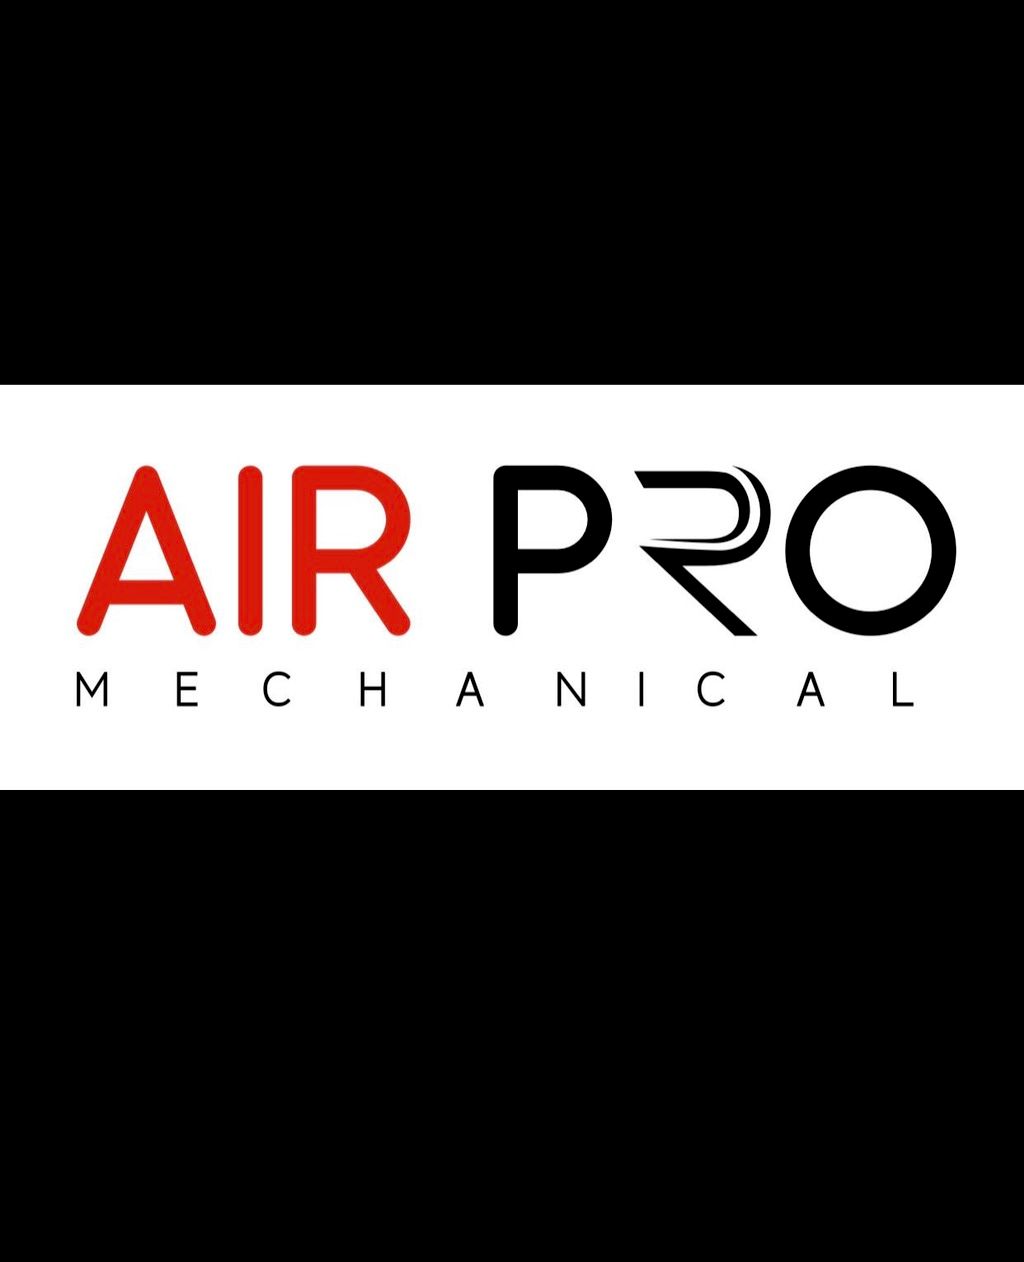 AirPro Mechanical, LLC